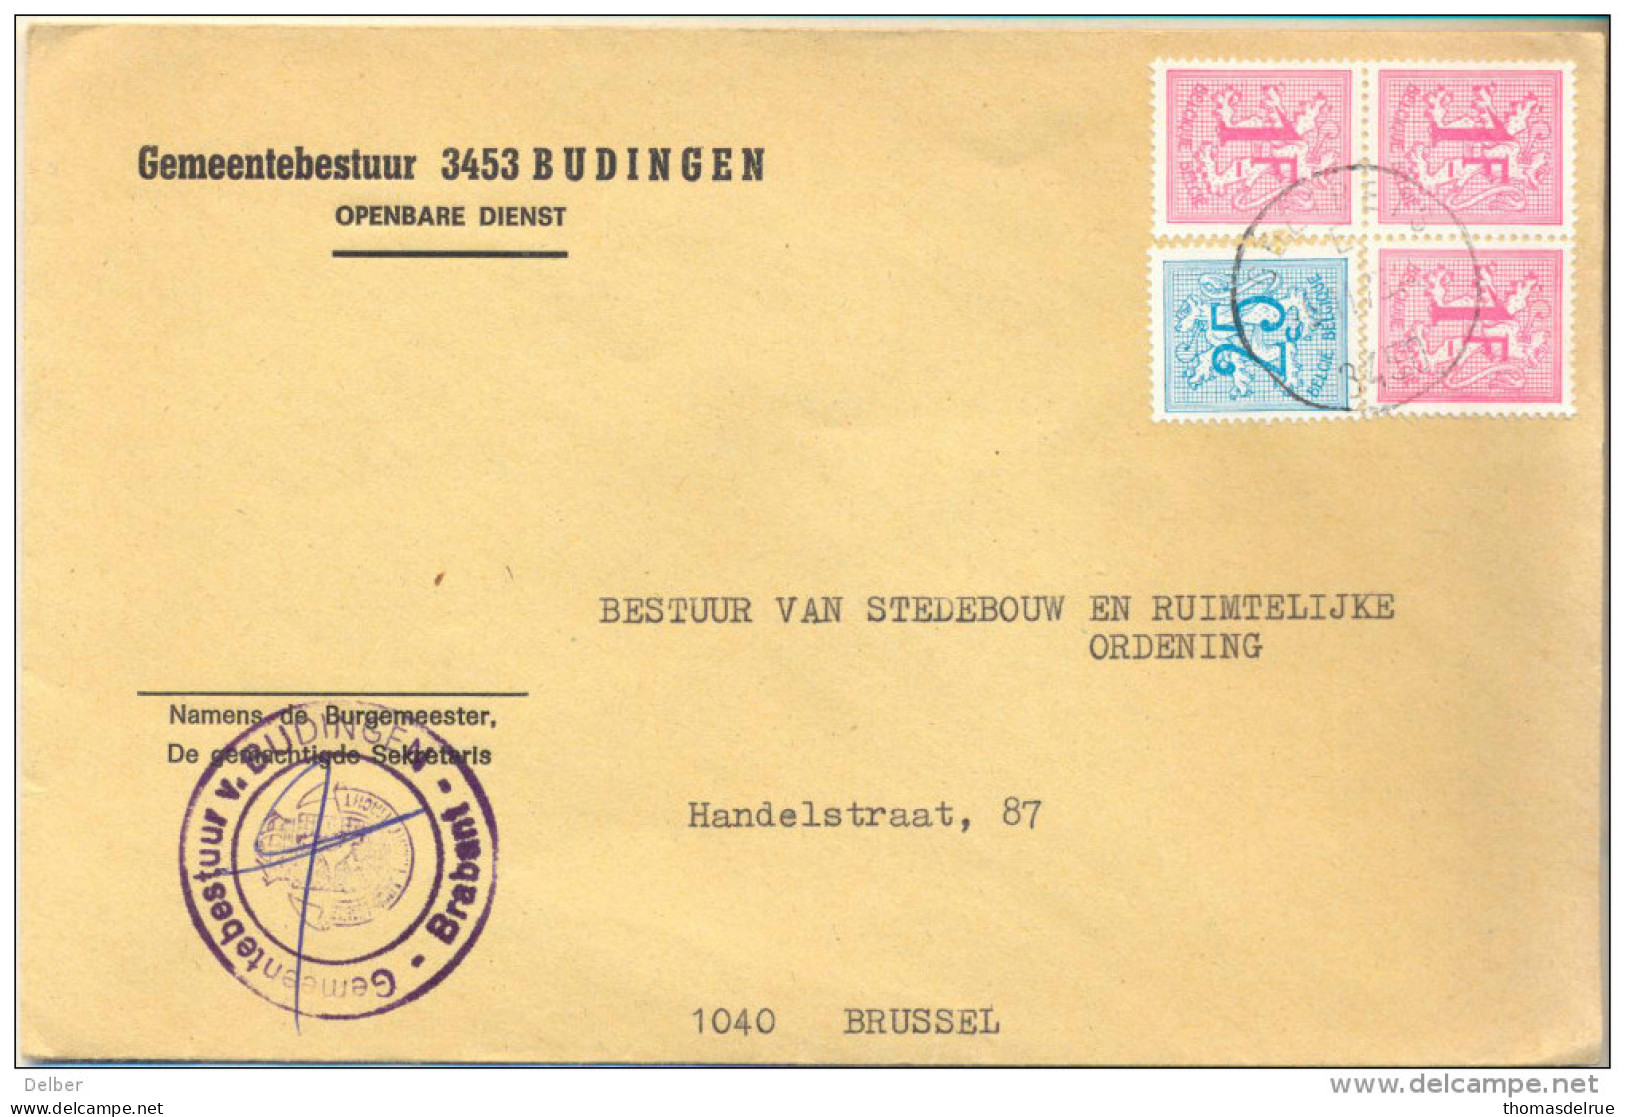 4Za928 : Open Omslag: GEMEENTEBESTUUR 3453 BUDINGEN 3,25 F Port > 1040 Brussel+ Contreseing . - 1951-1975 Heraldic Lion